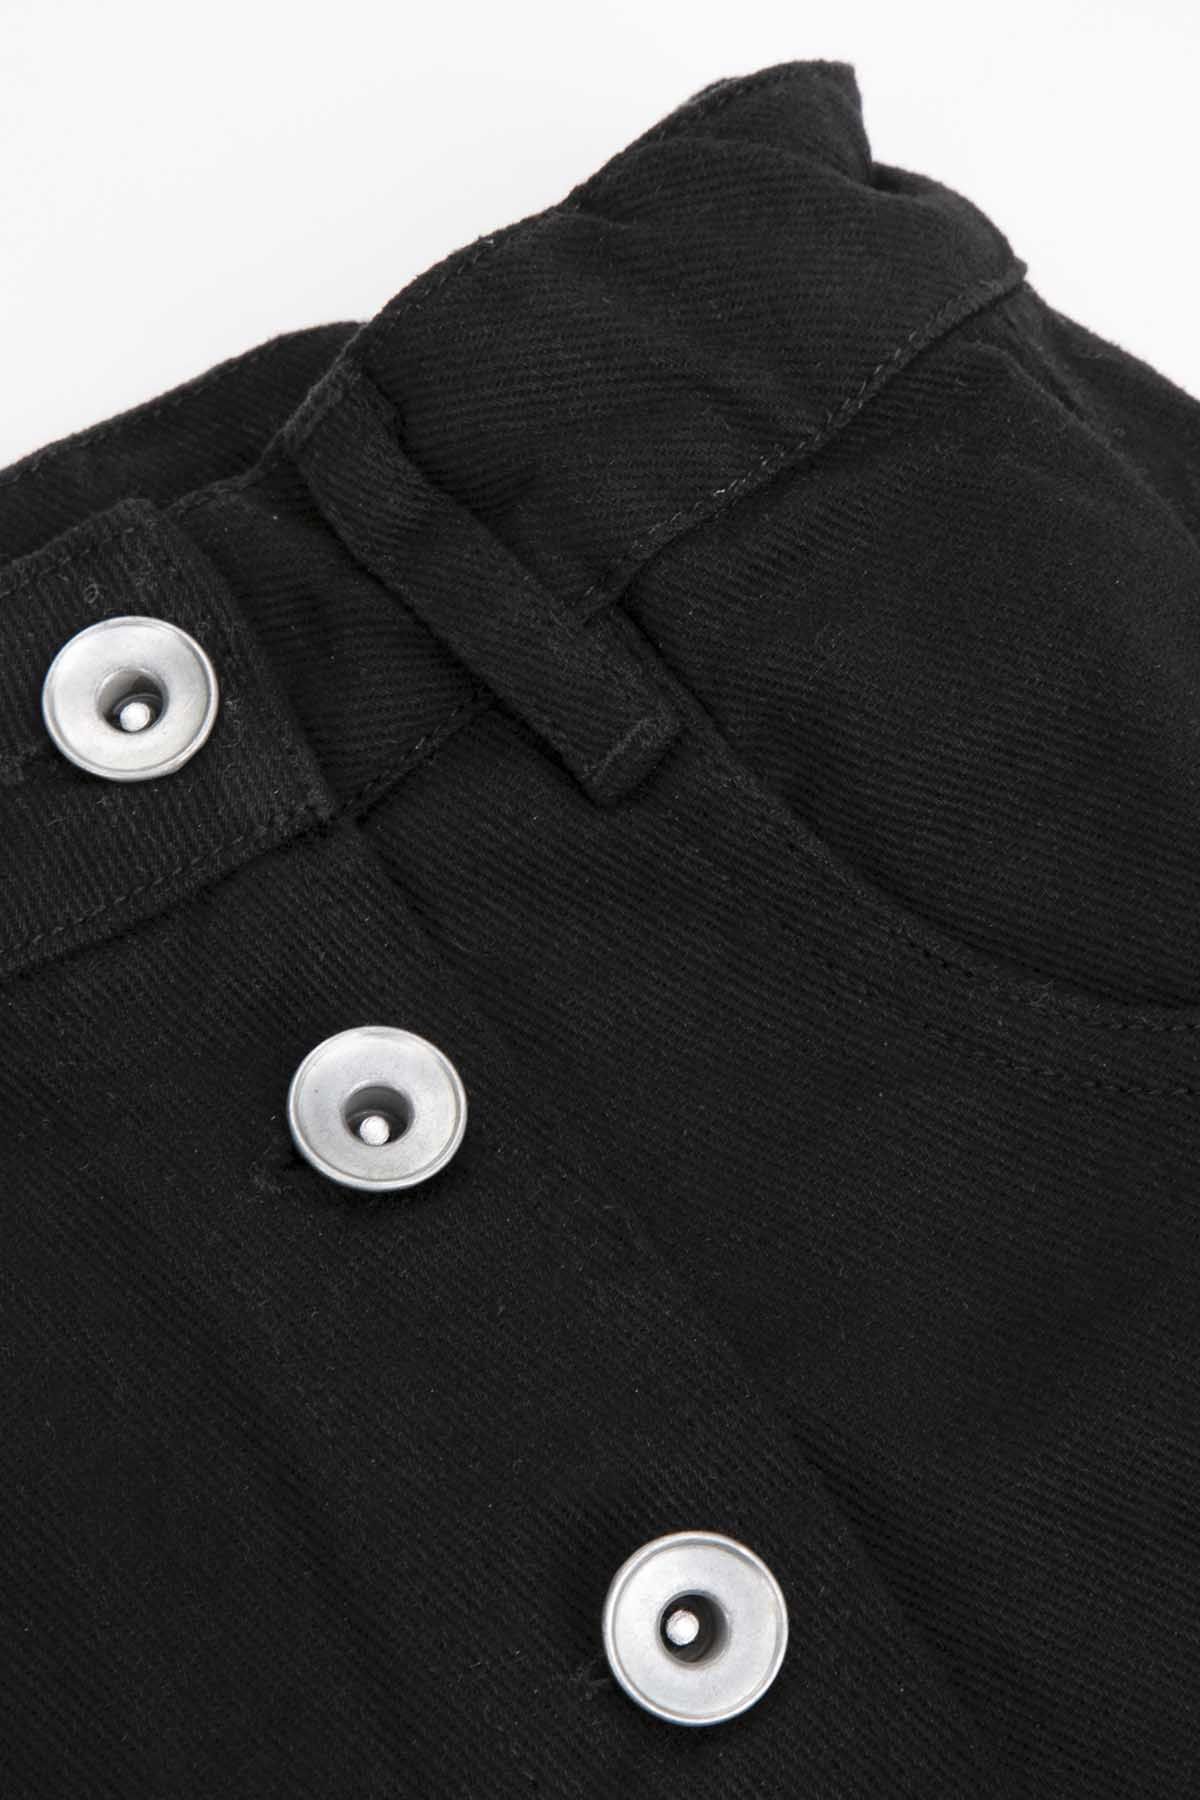 Krótkie spodenki czarny jeansowy model spódnico-spodni 2218555